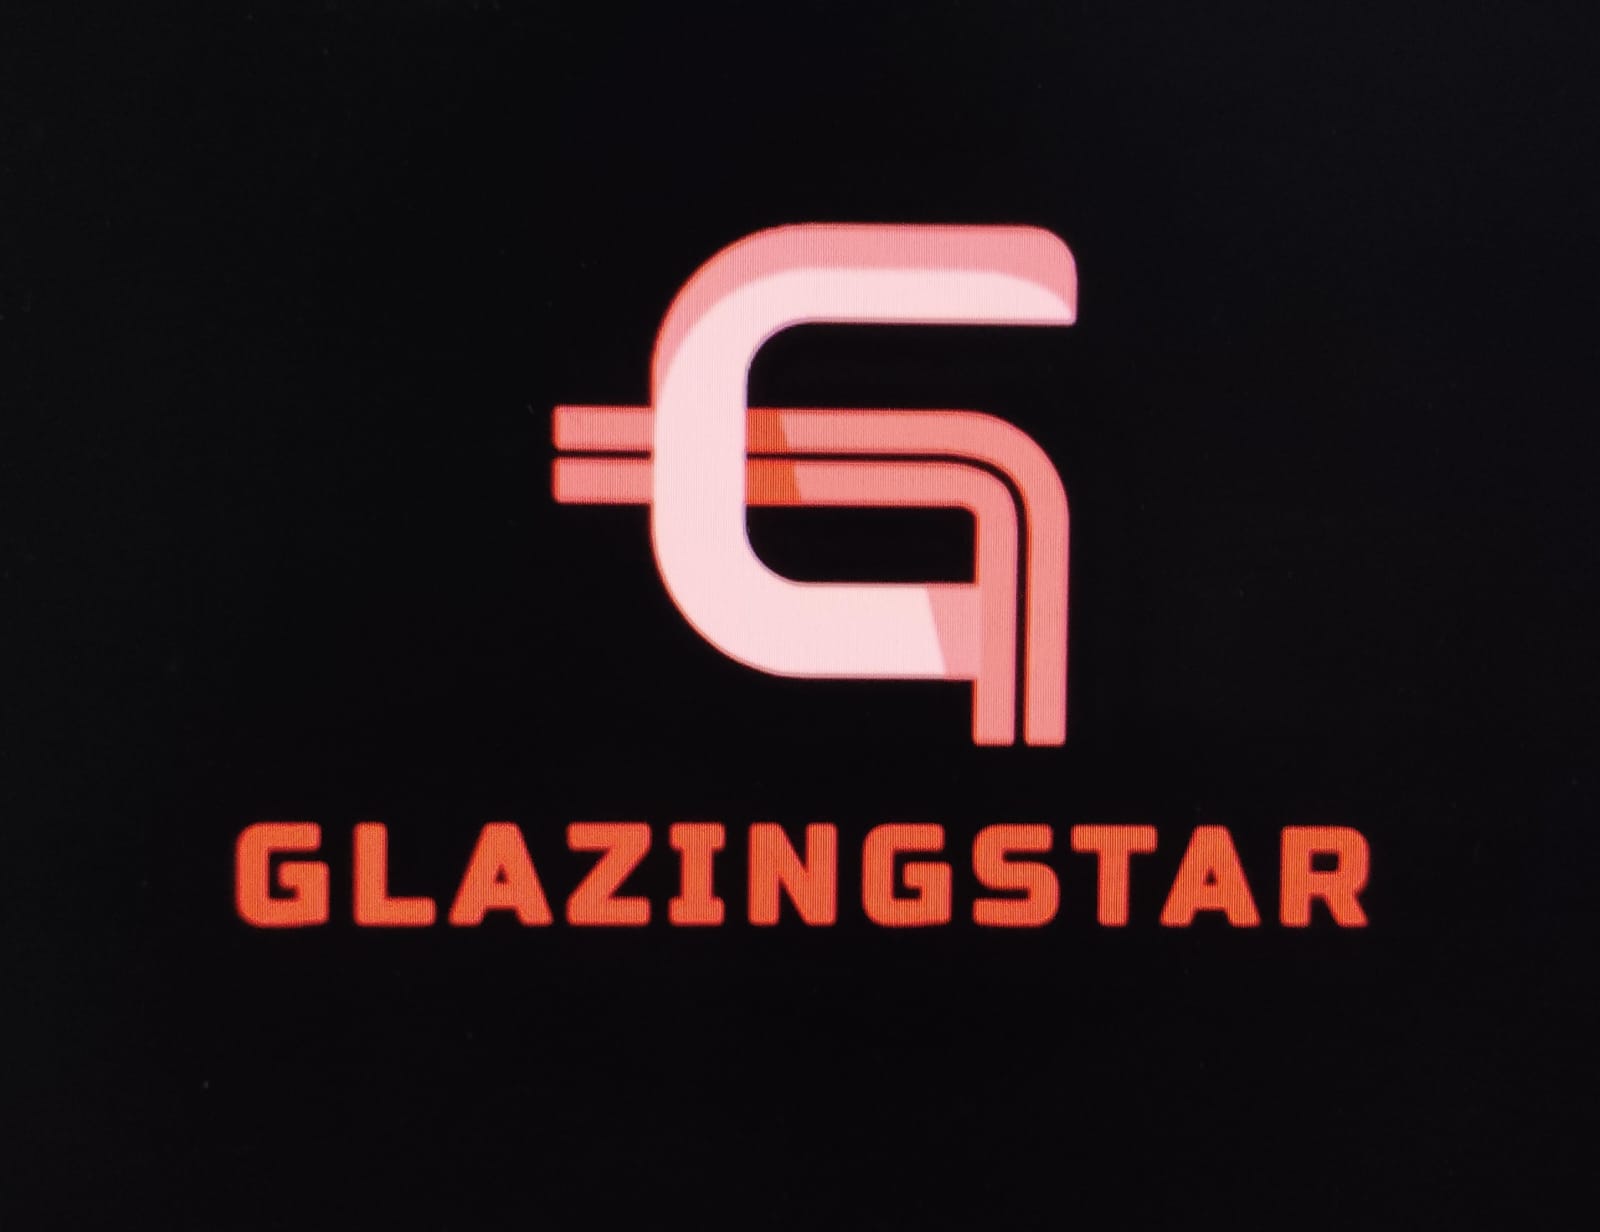 www.Glazingstar.com